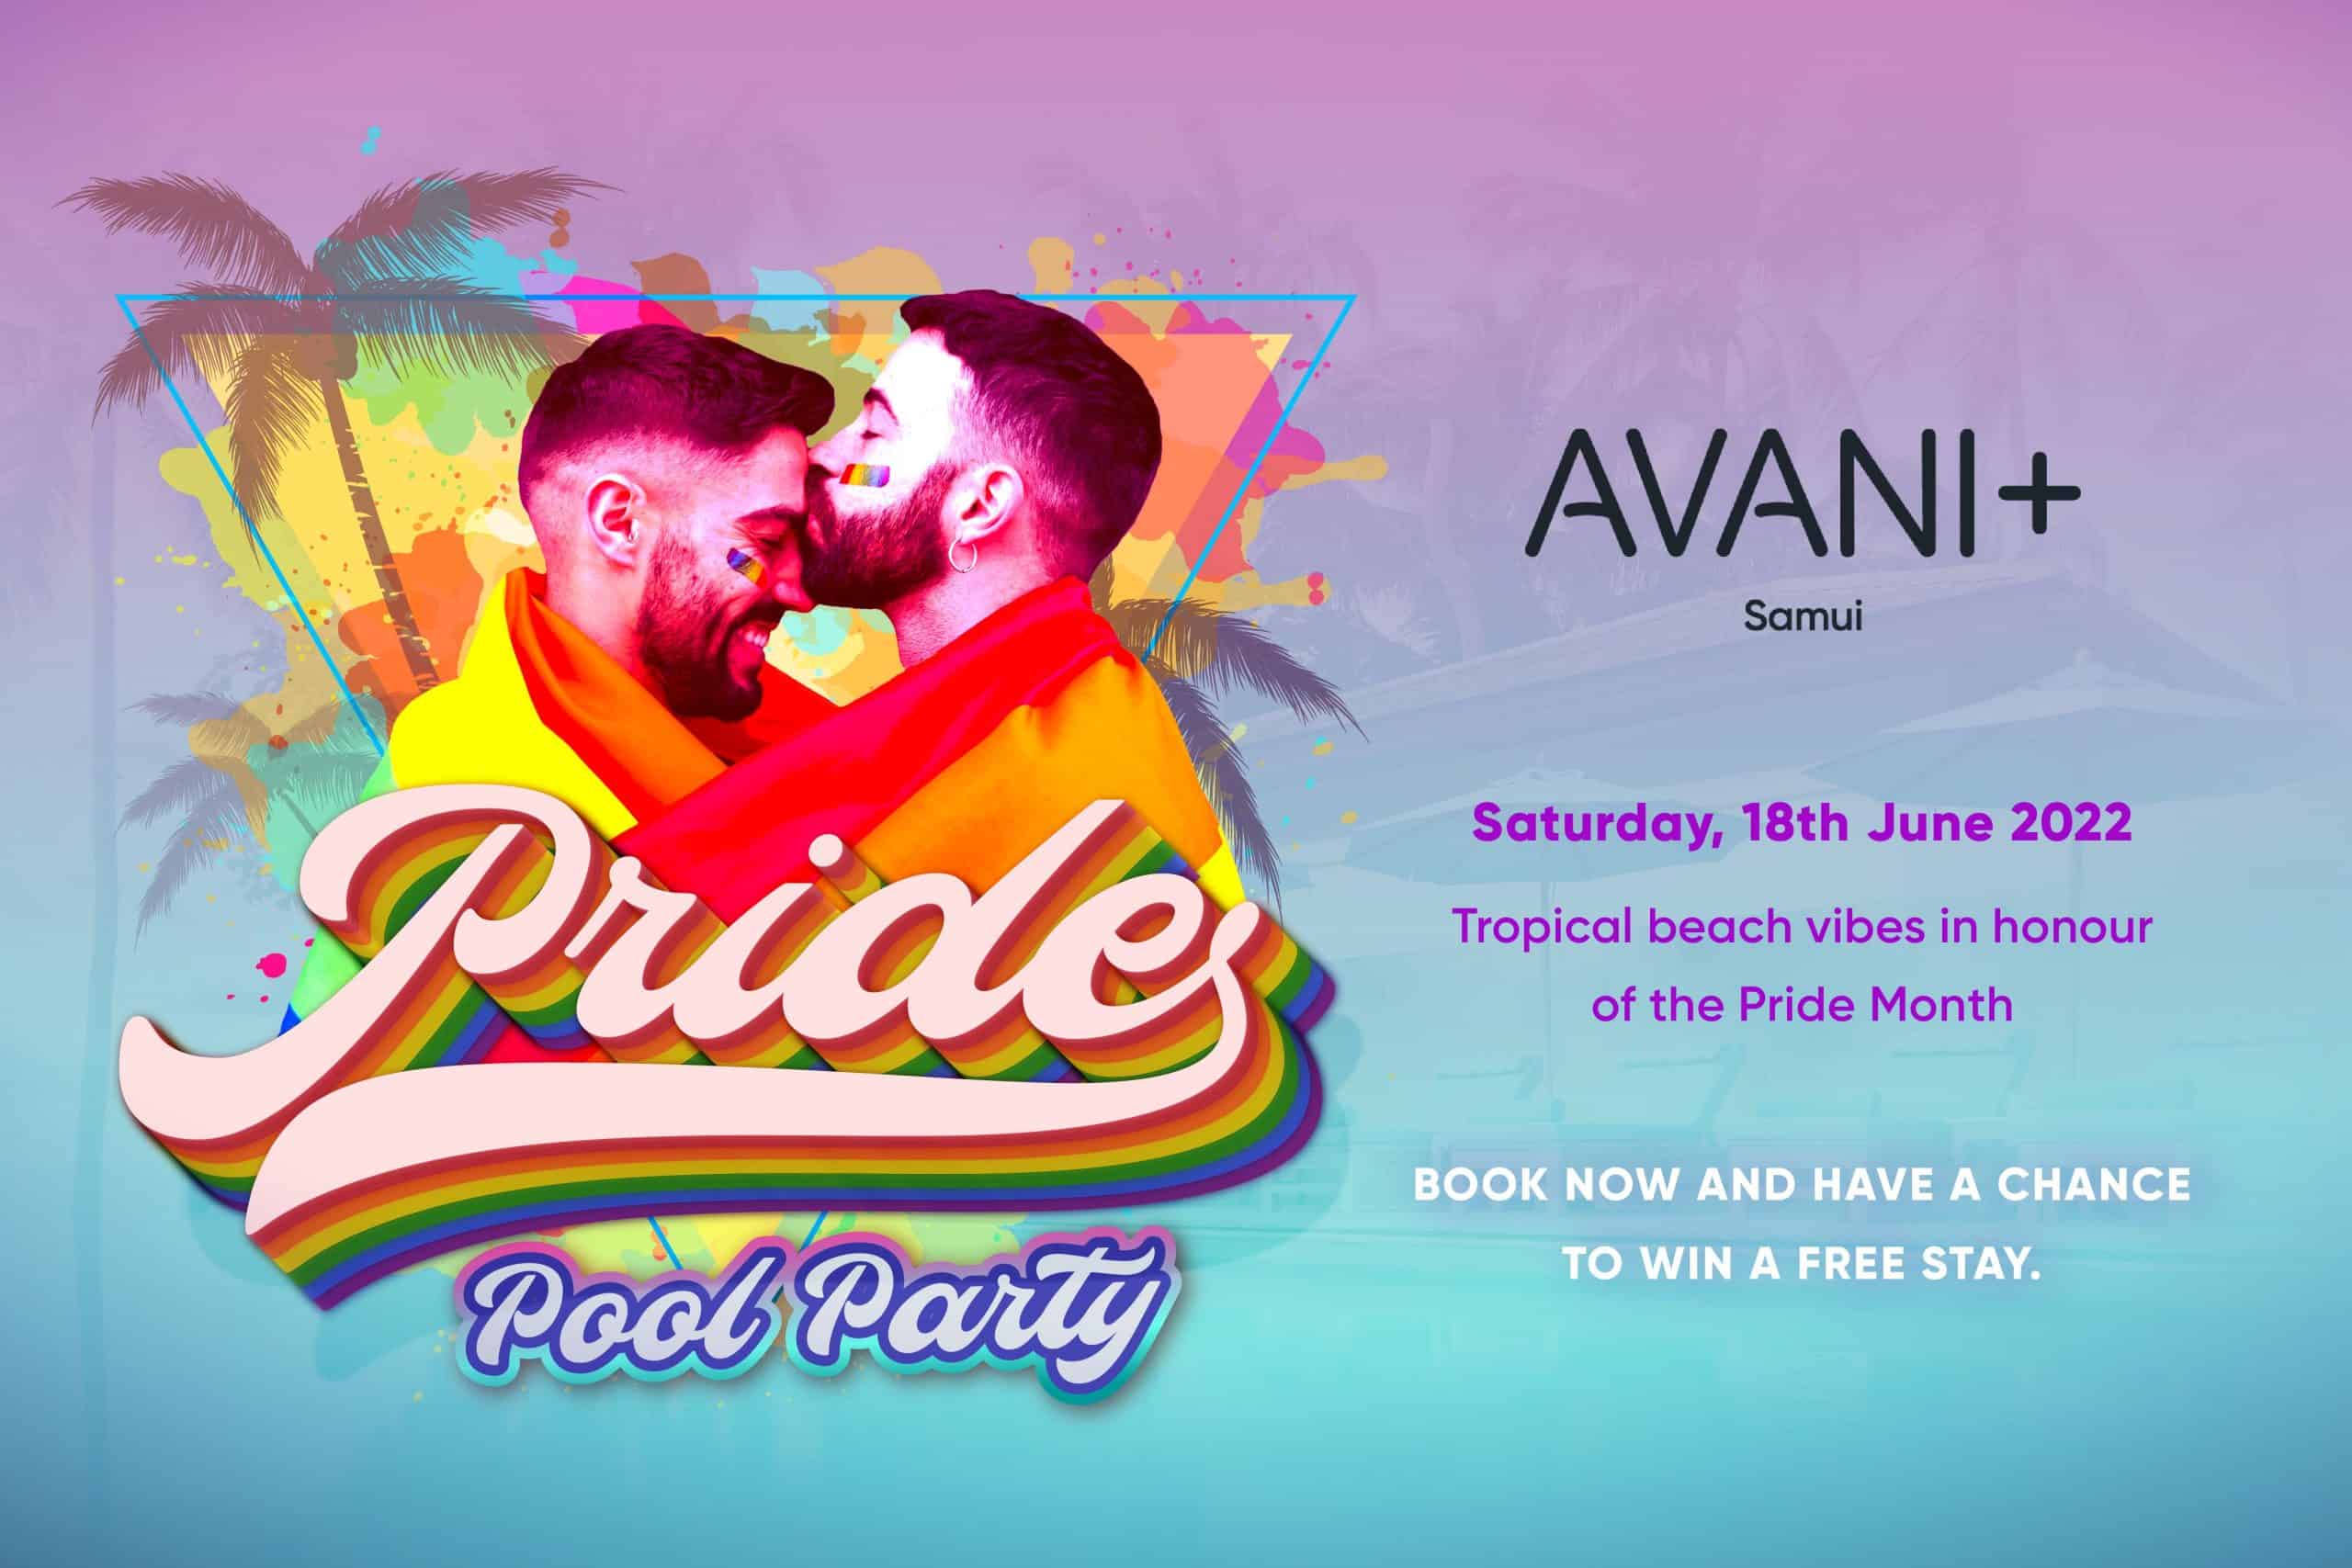 מסיבת בריכת הגאווה Avani+